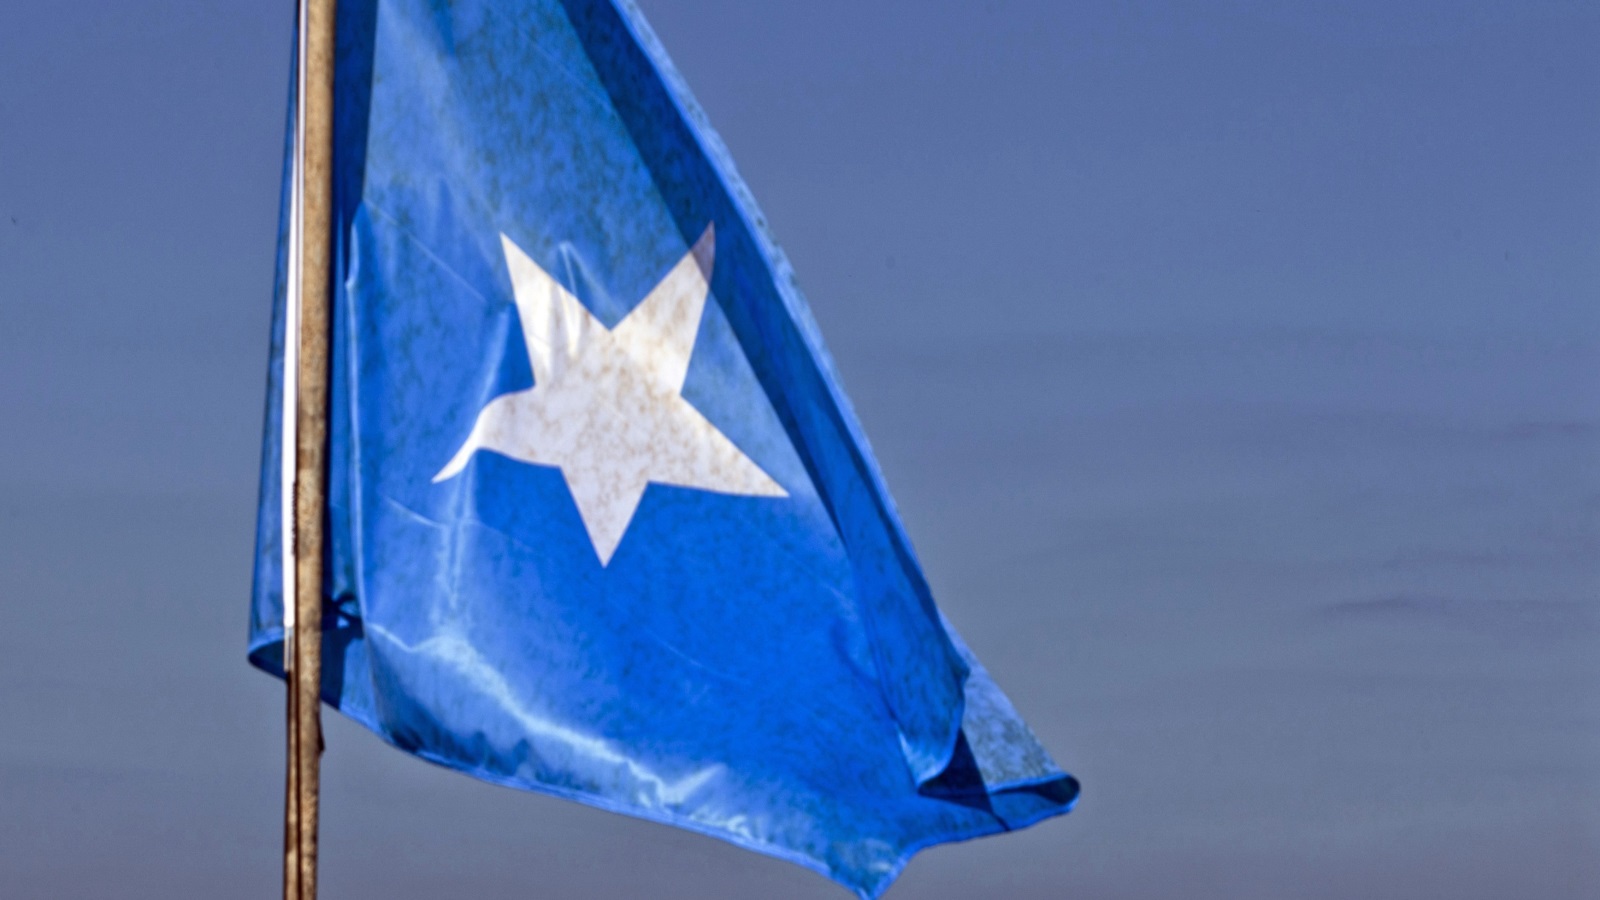 يدرك الشعب الصومالي جيدا مدى أهمية وجود حكومة تدير شئونها الداخلية الخارجية ومستقلة عن أي قوة أخرى. وأن الحكومة السيئة أفضل من عدمها